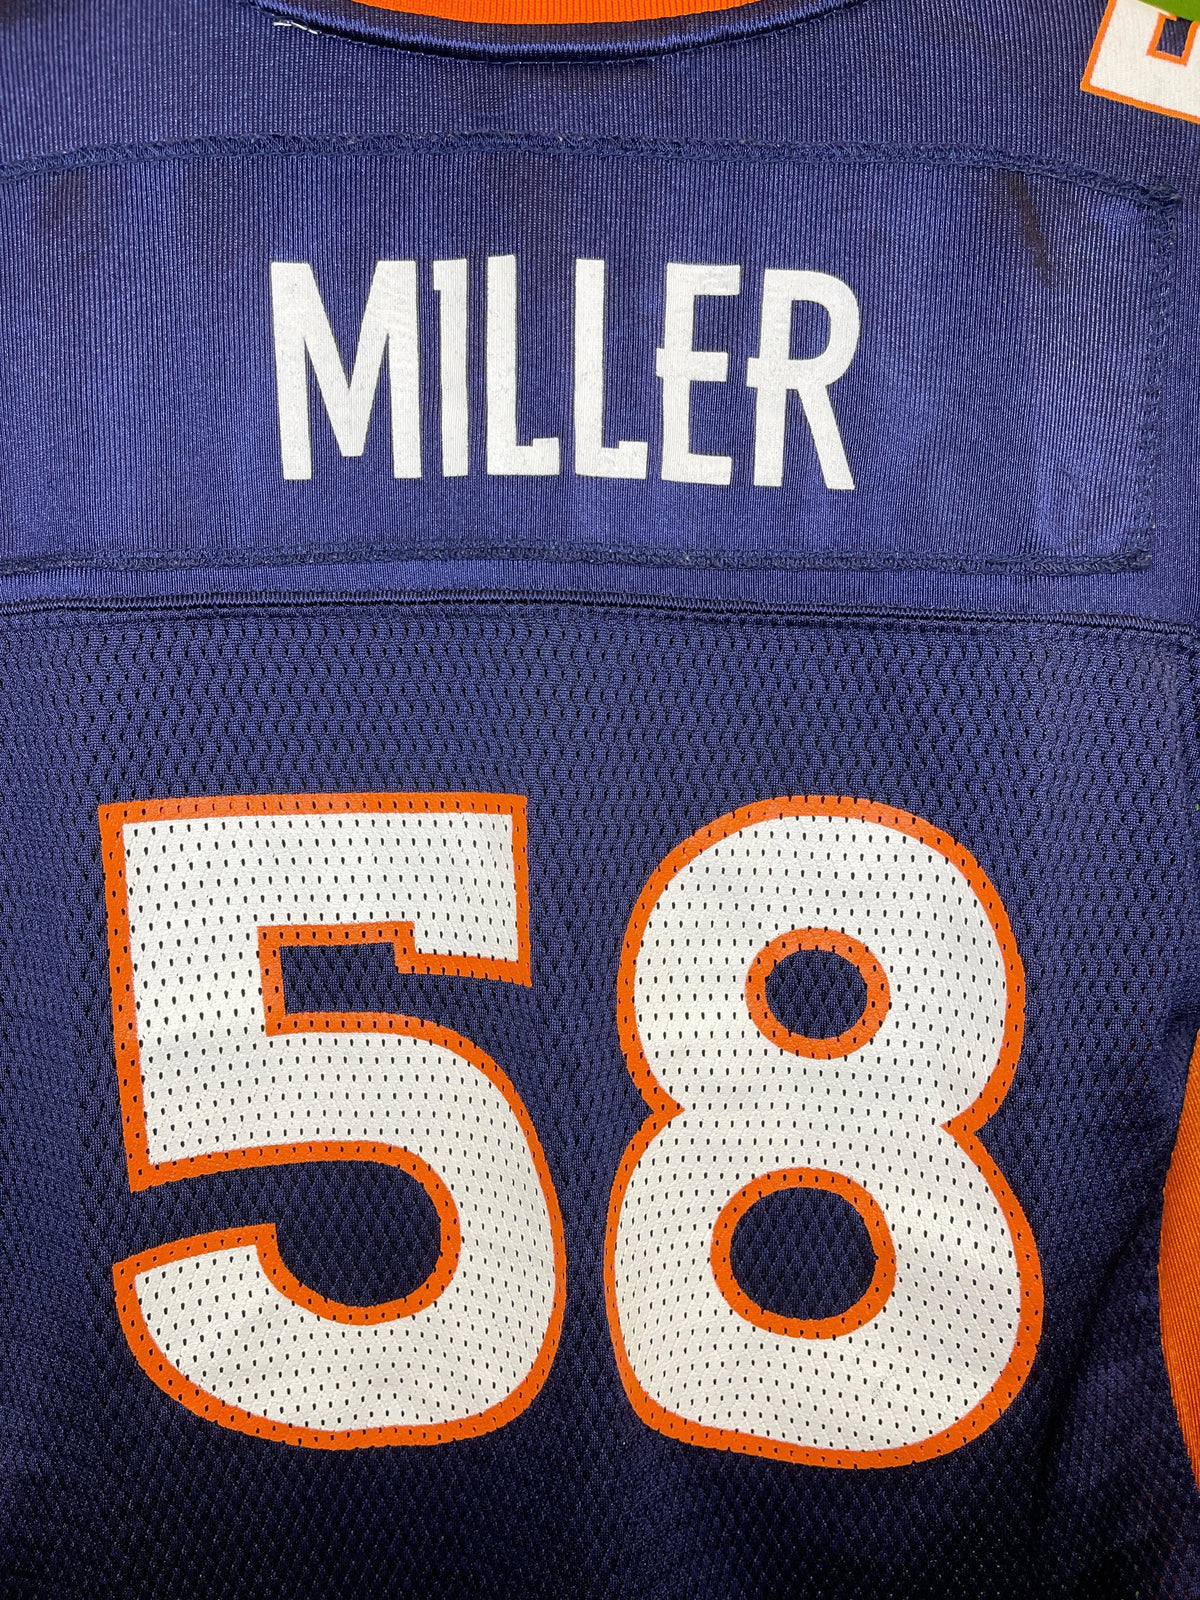 NFL Denver Broncos Von Miller #58 Reebok Jersey Youth Large 14-16